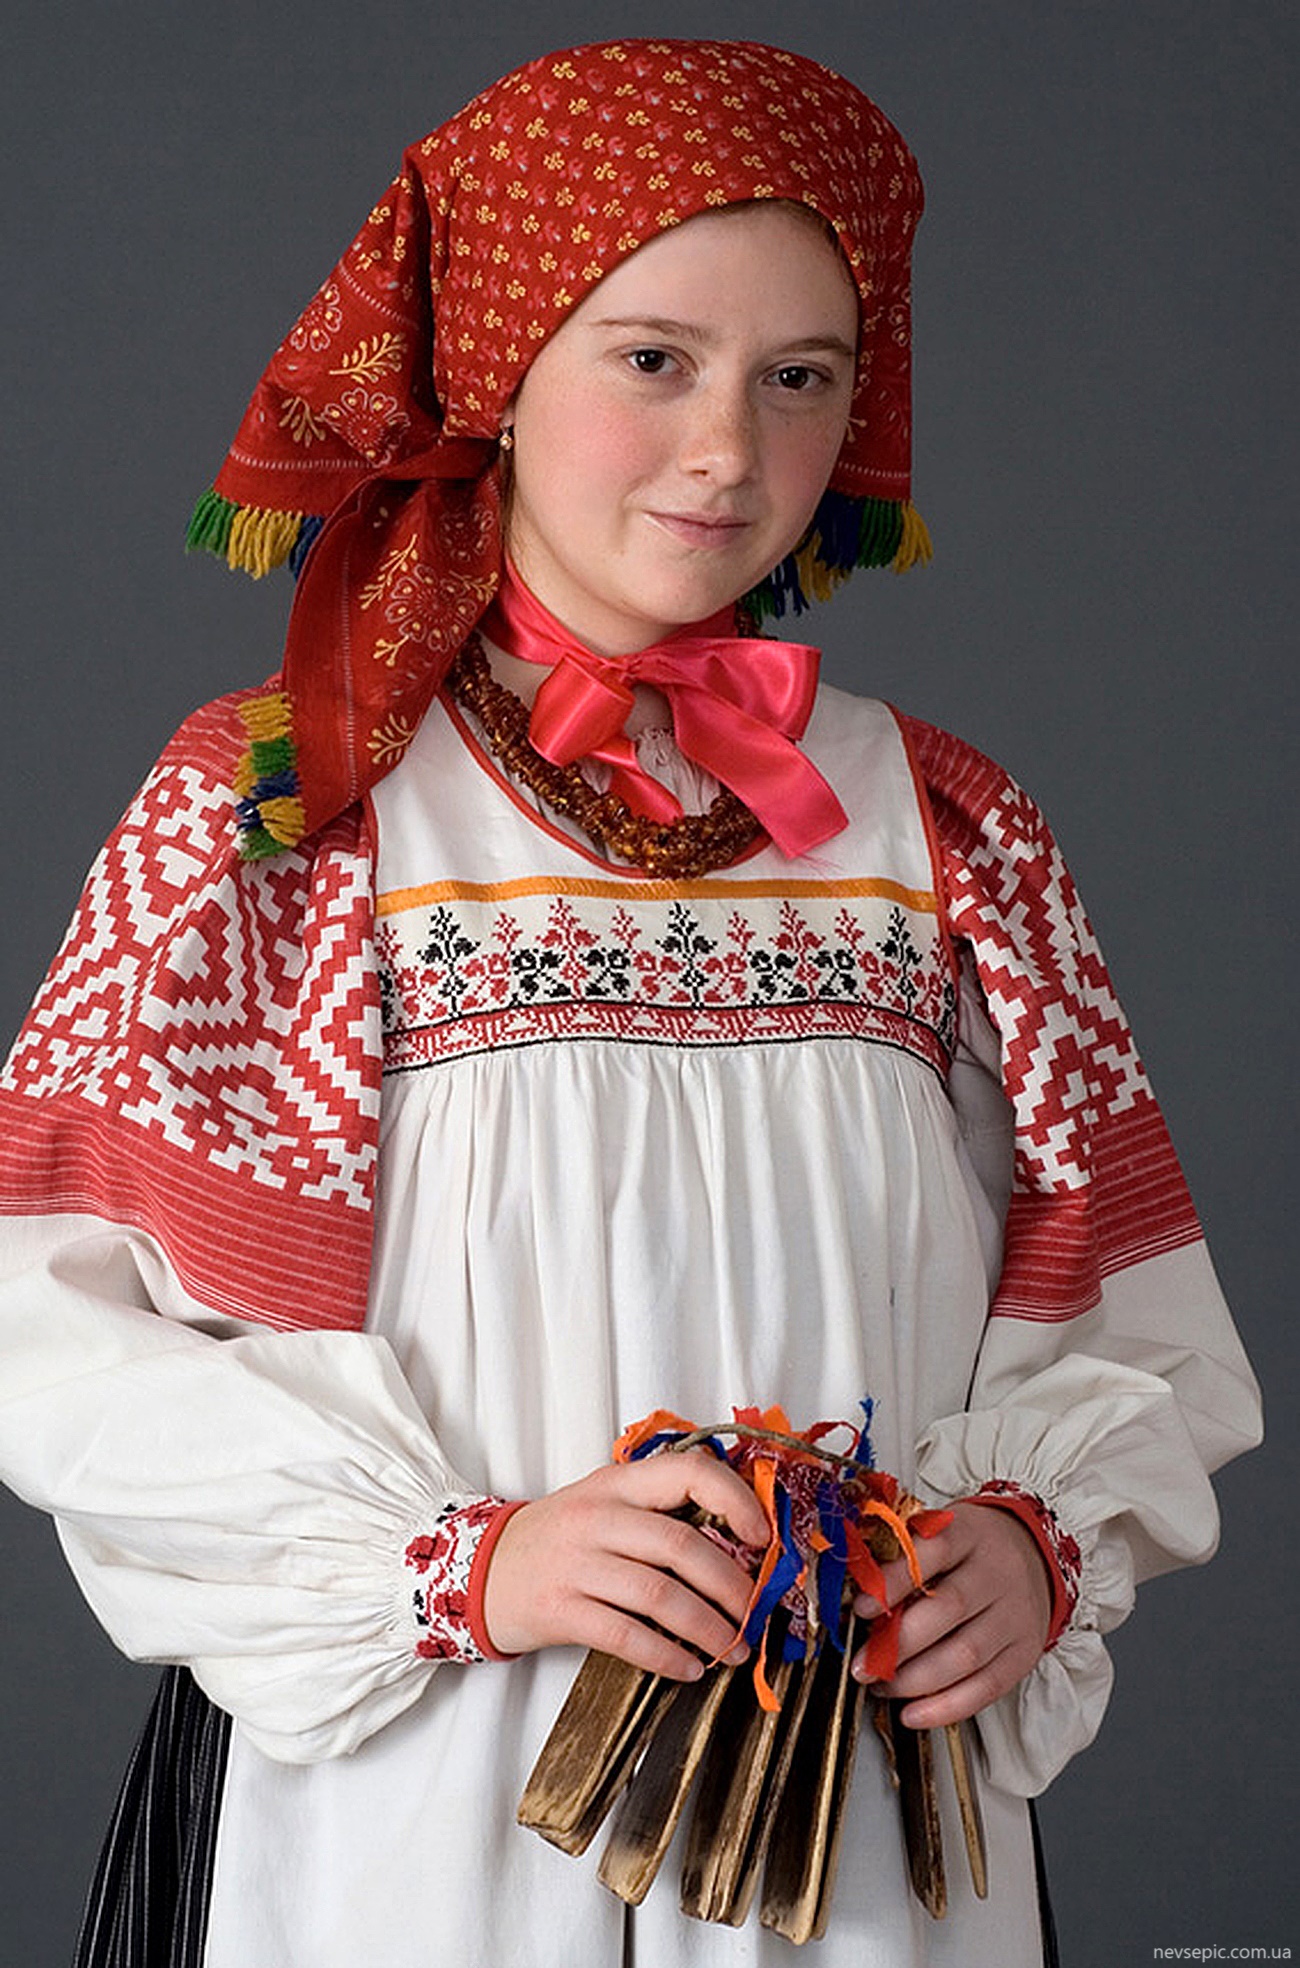 Русский национальный костюм 21 фото Картины художники фотографы на Nevsepic